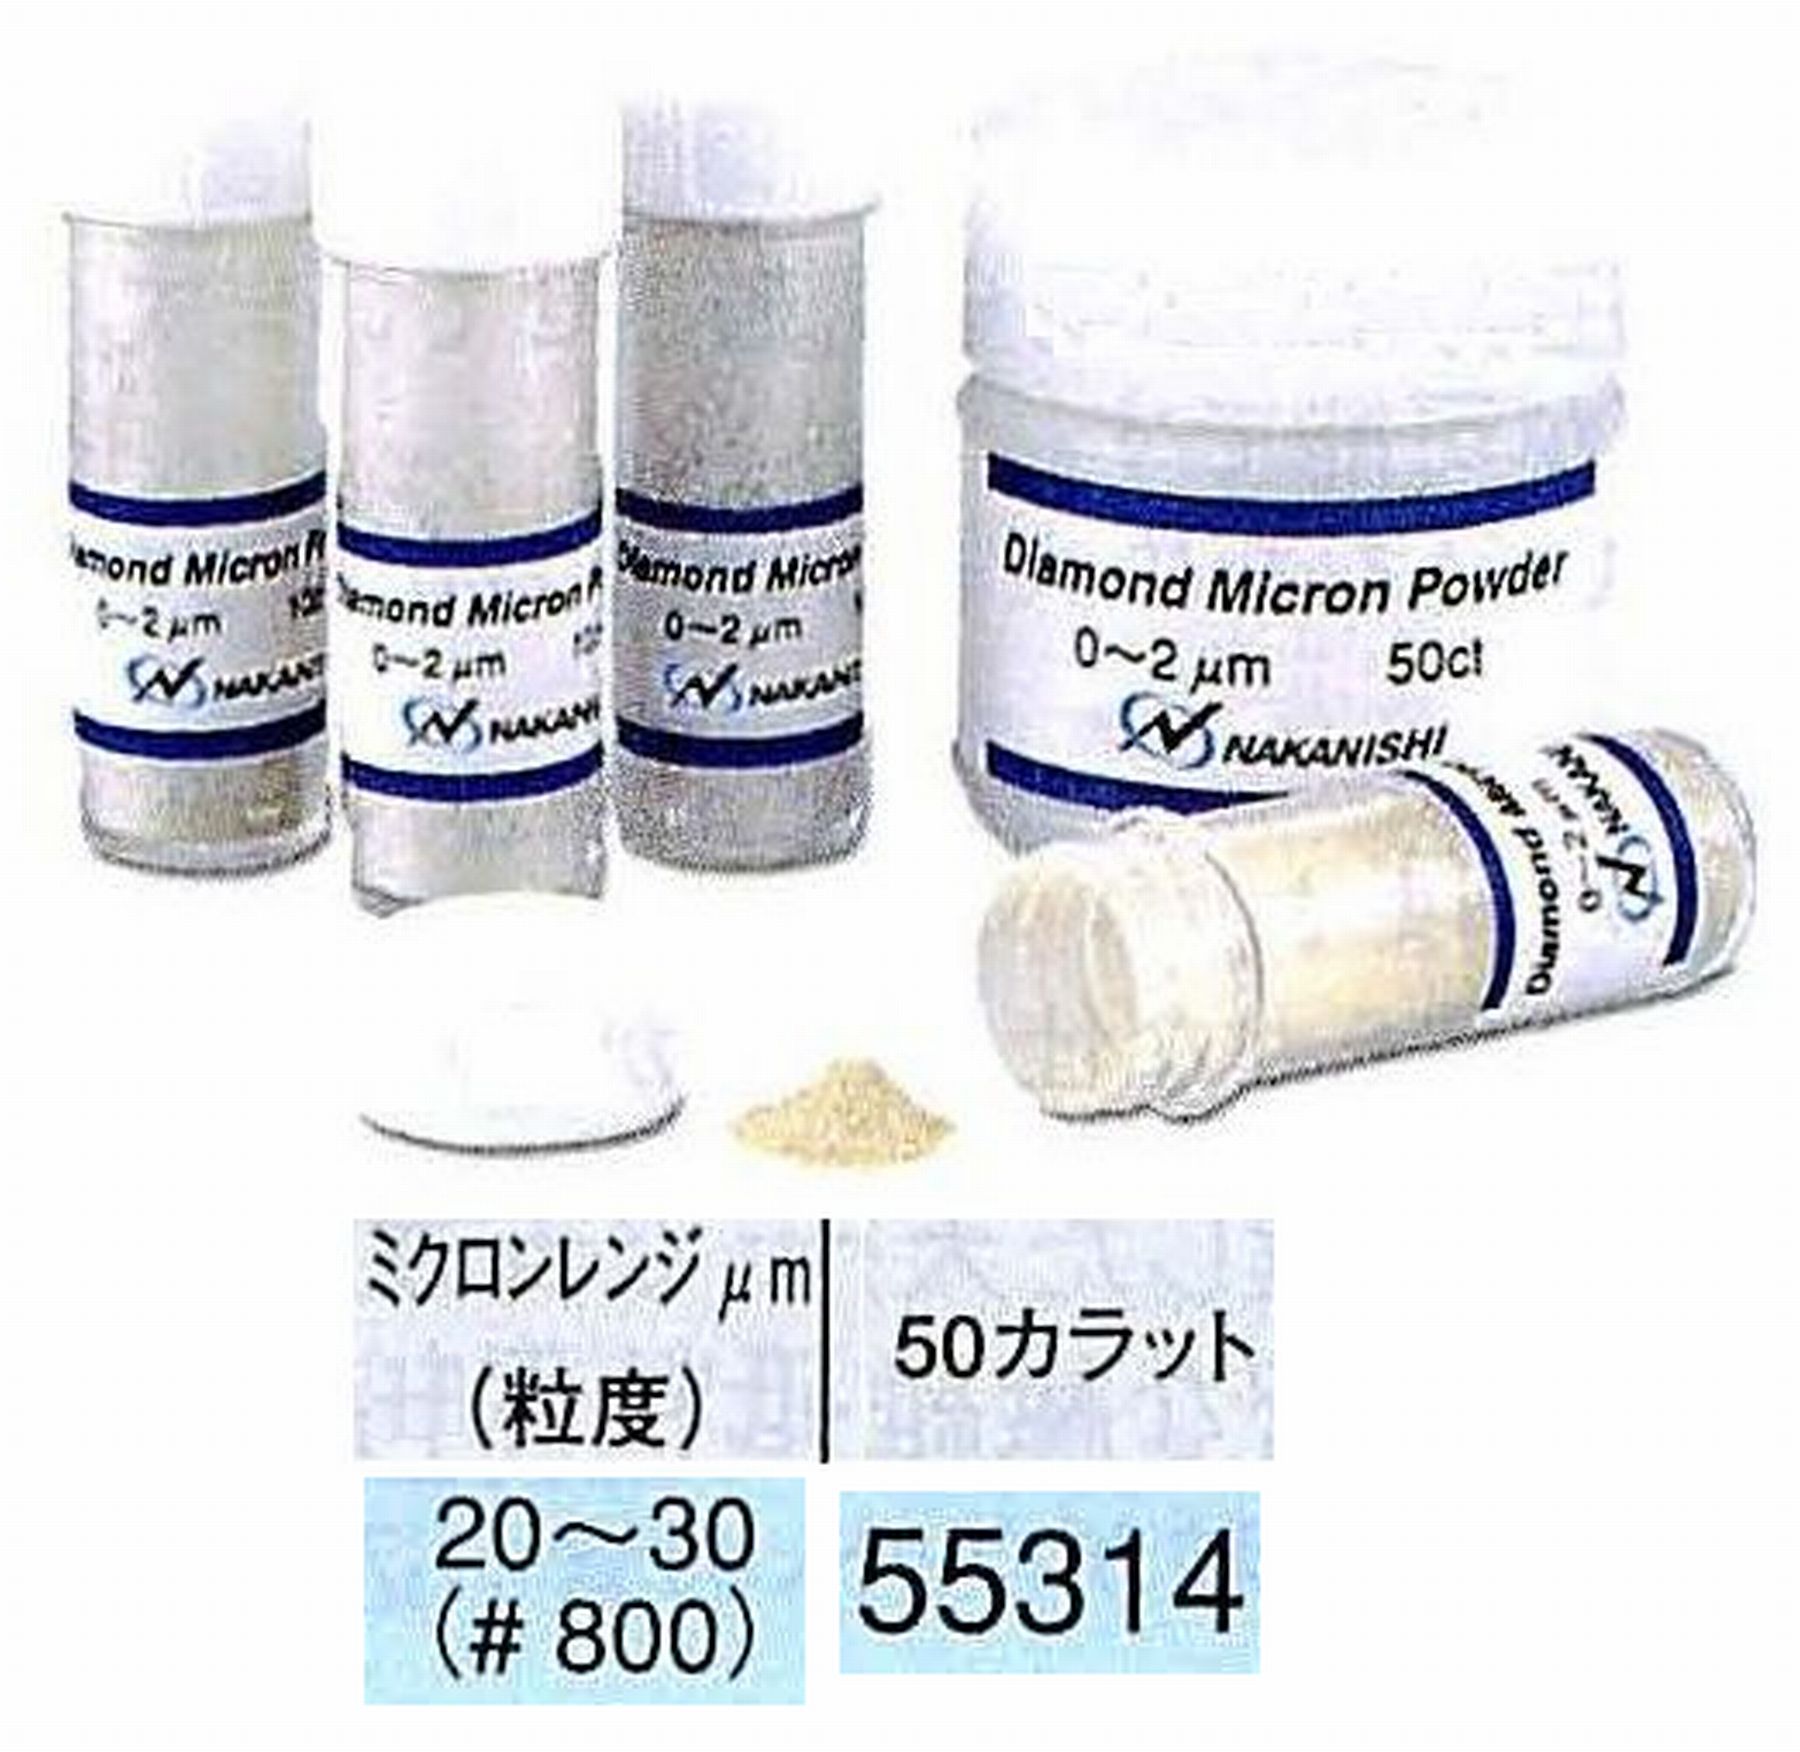 ナカニシ/NAKANISHI ダイヤモンドミクロンパウダー ミクロンレンジ20～30(砥度) 50カラット 55314